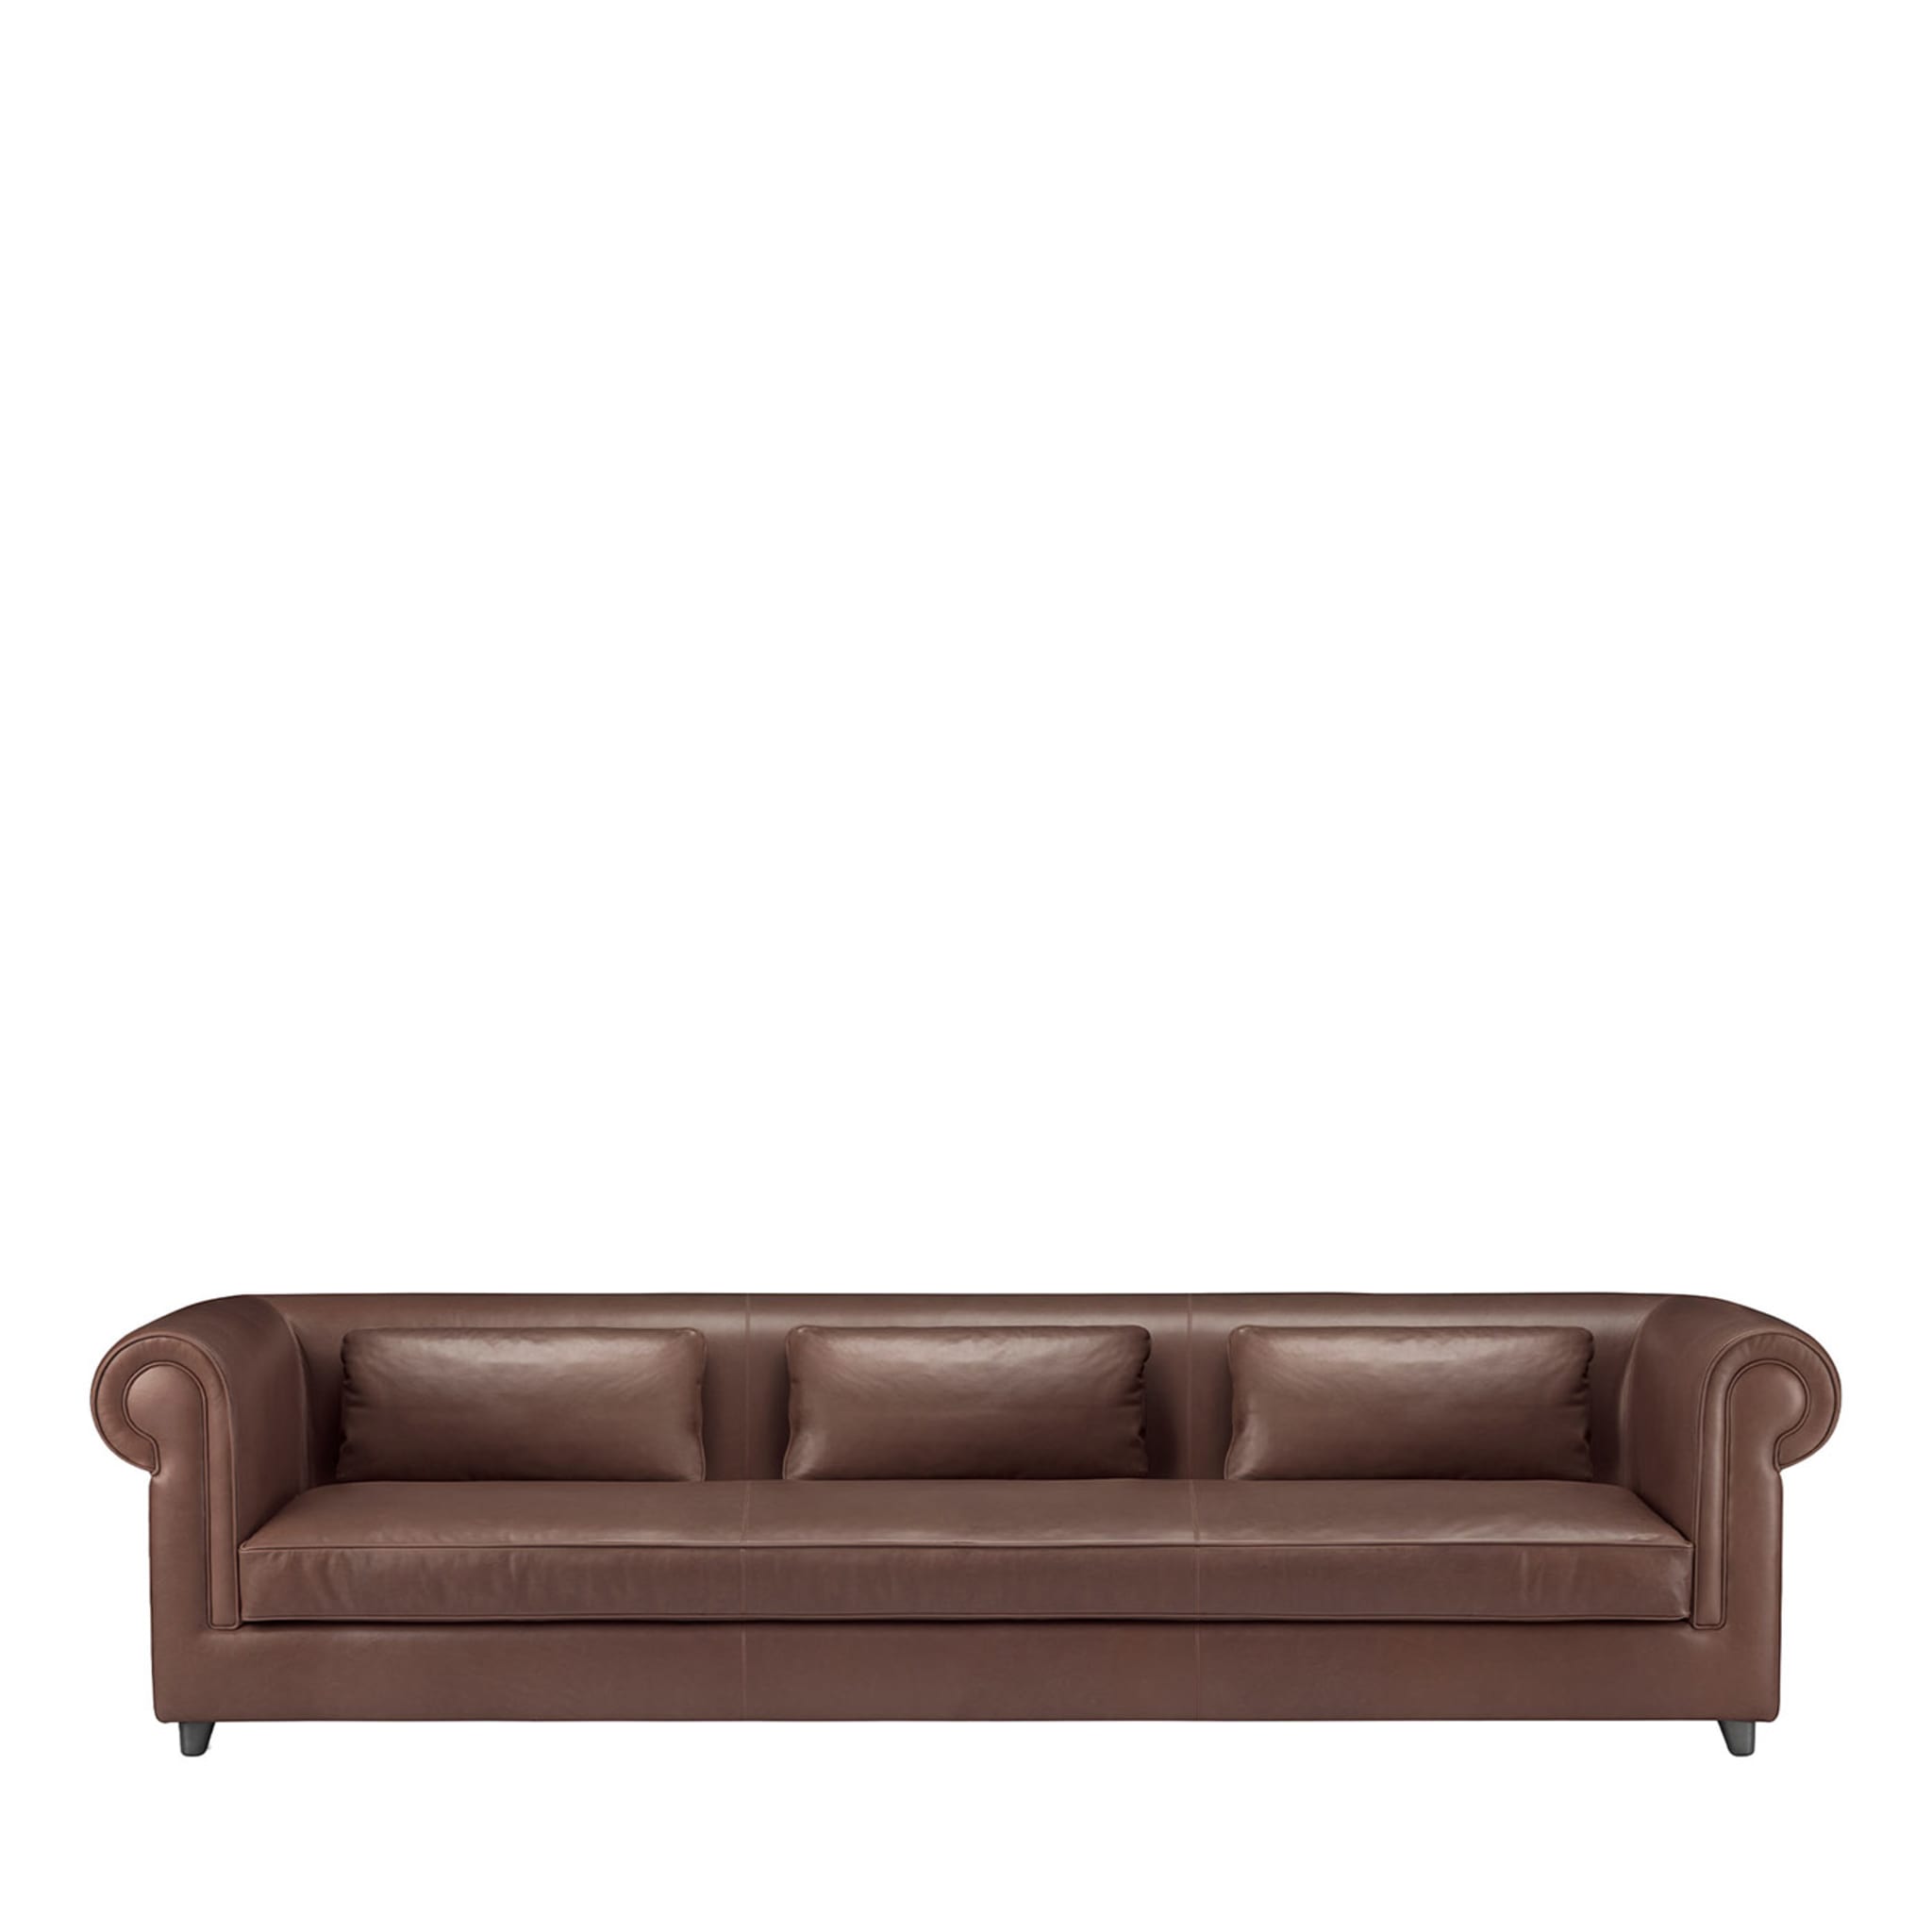 Portofino 3-Seater Brown Sofa by Stefano Giovannoni - Main view